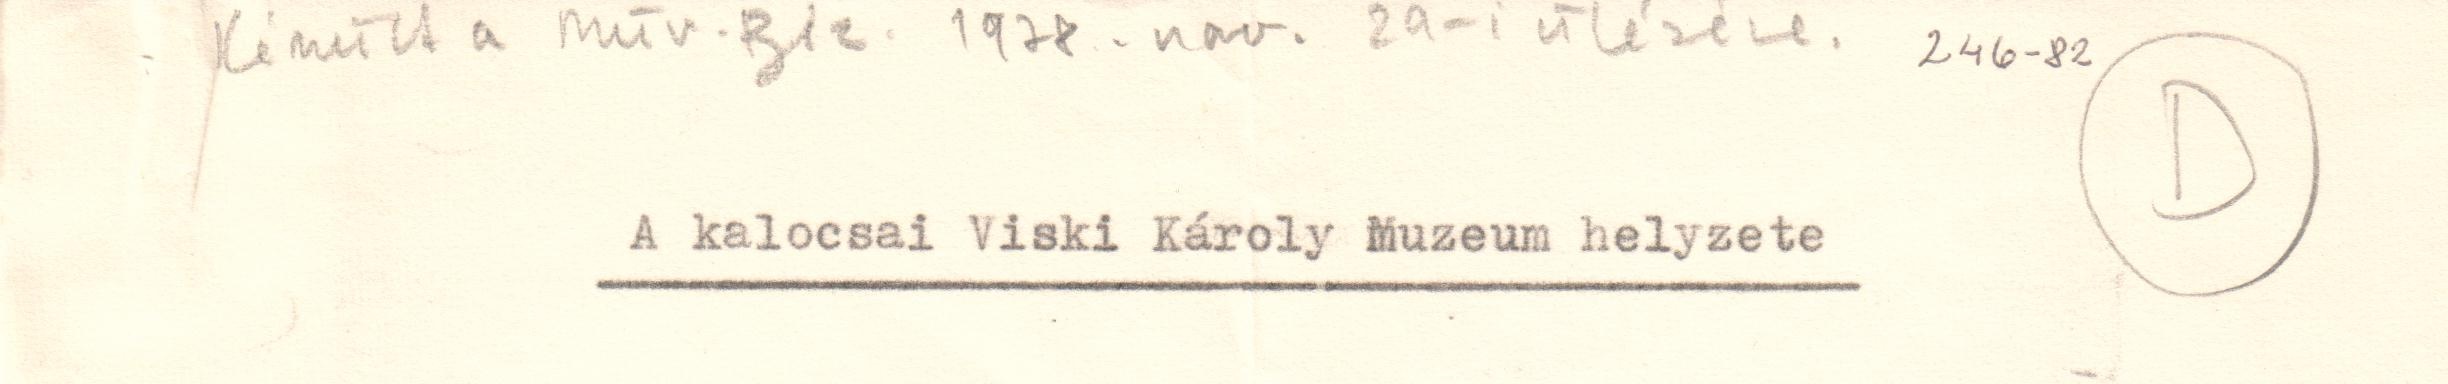 A kalocsai Viski Károly Múzeum helyzete, gépirat. (Viski Károly Múzeum Kalocsa RR-F)